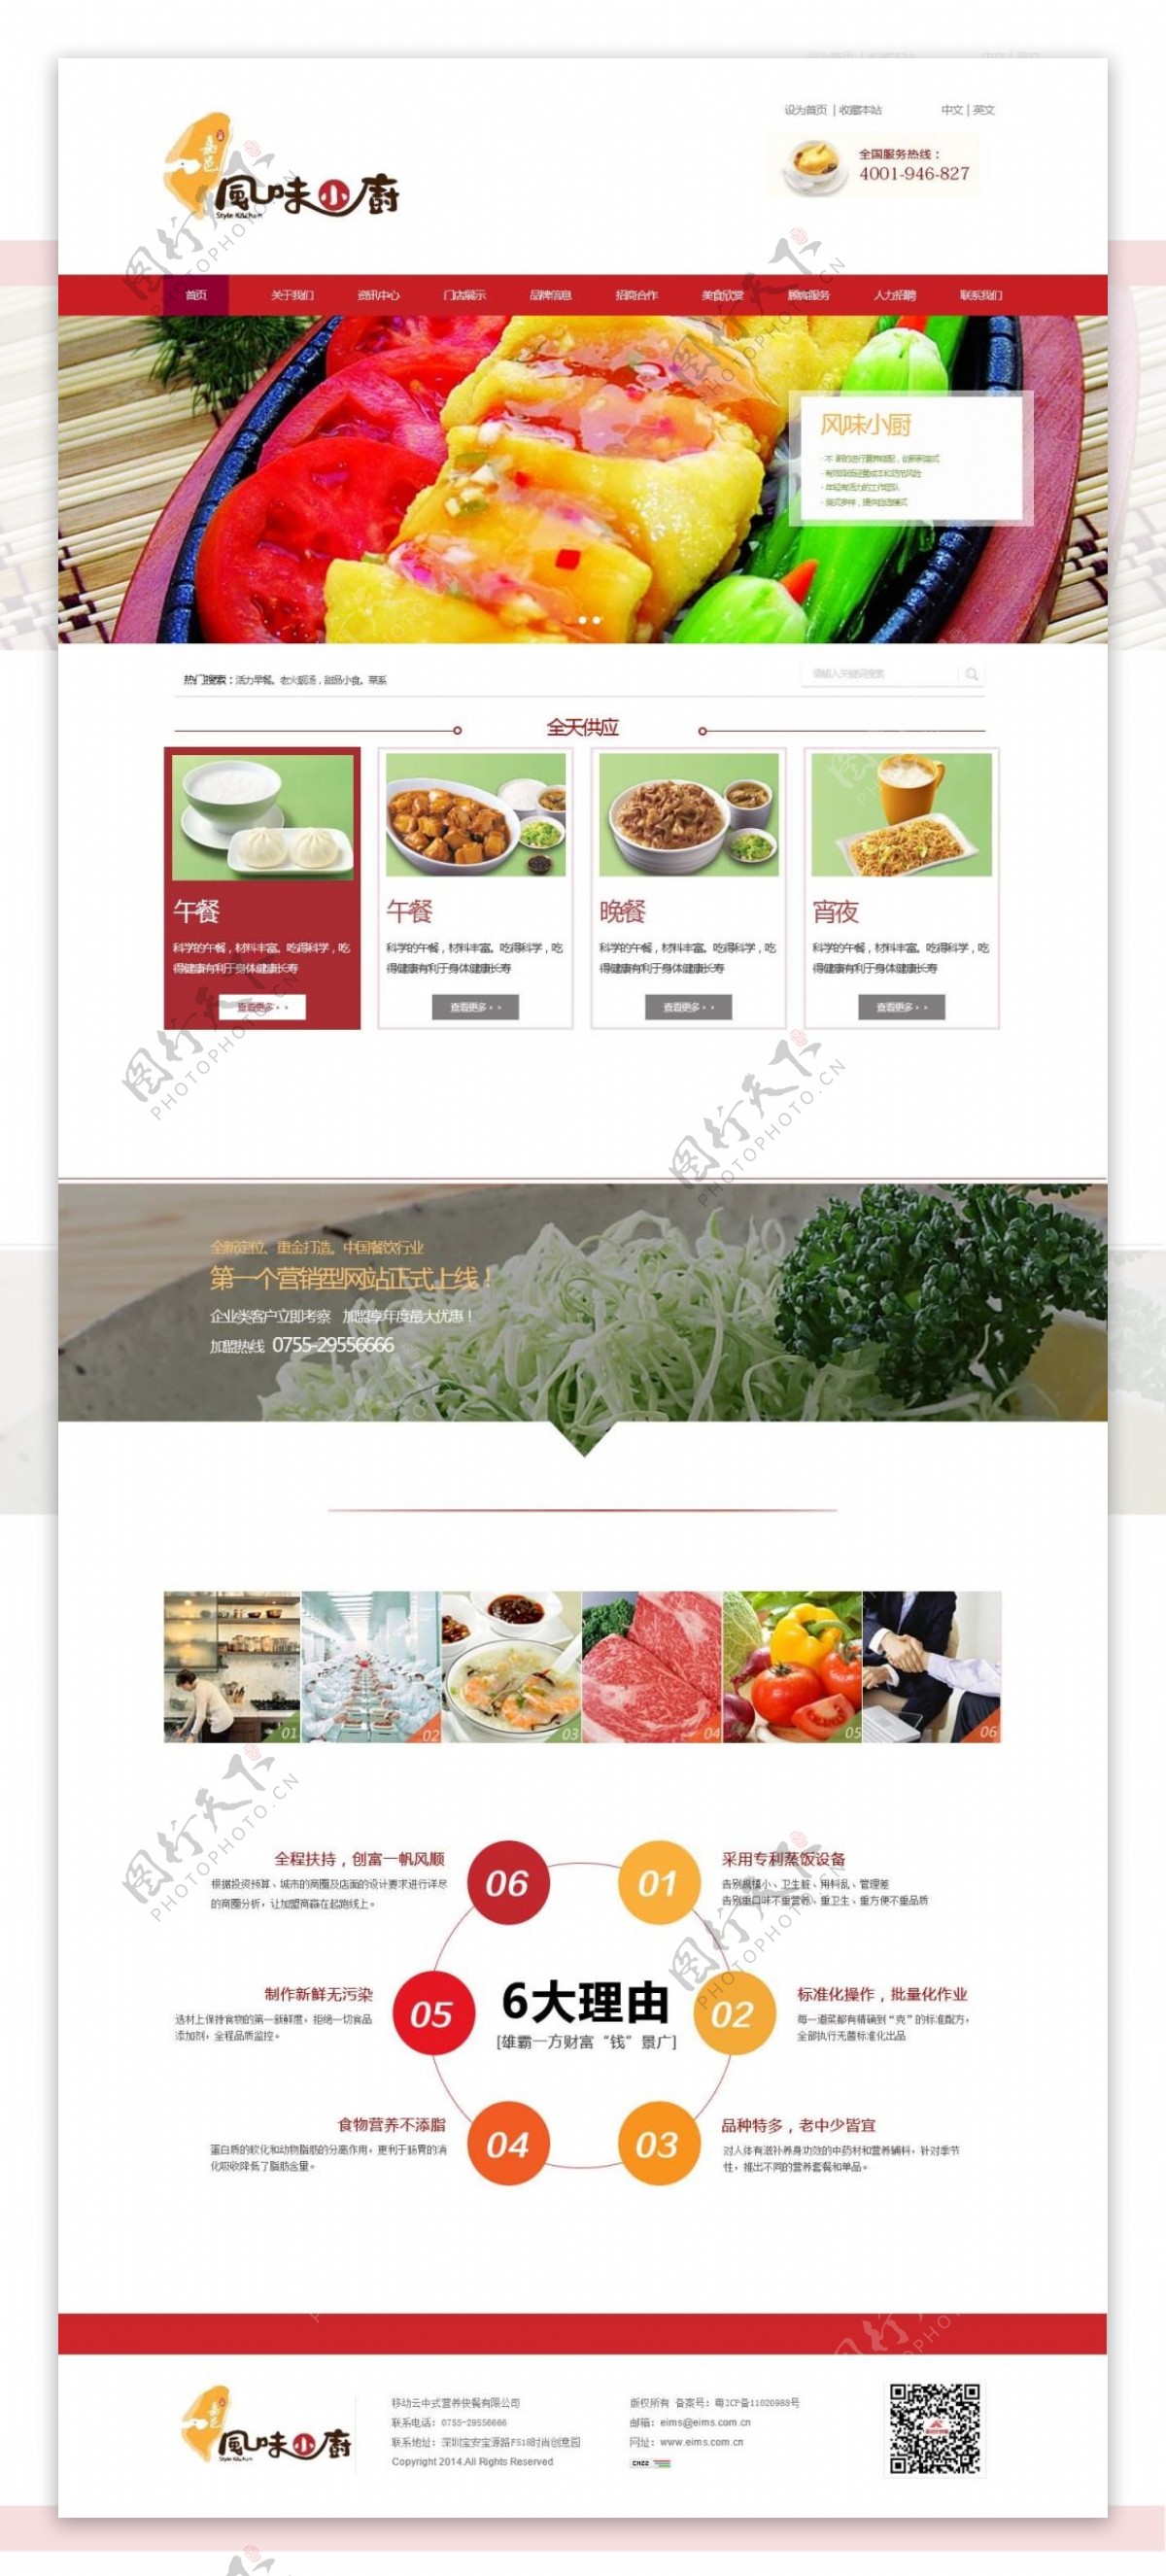 美食品牌官方订餐网站